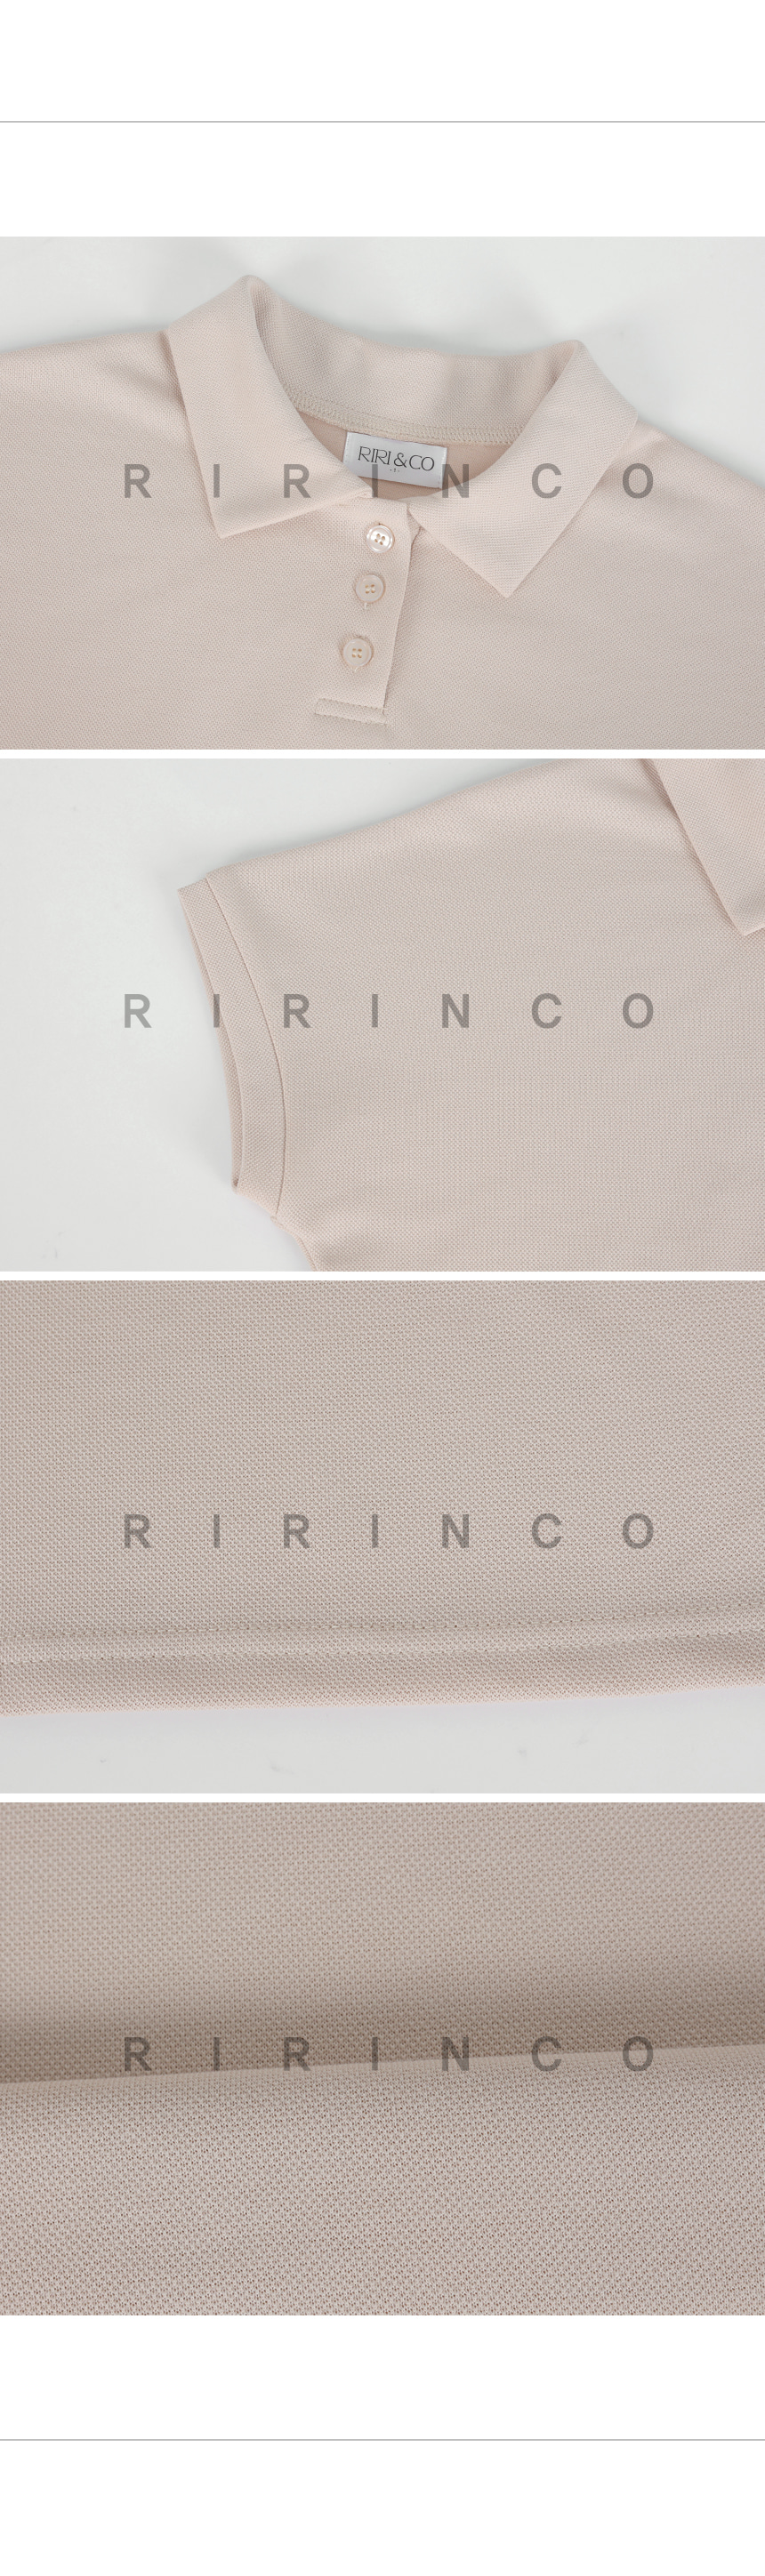 RIRINCO セミクロップド丈カラーネックラグランTシャツ